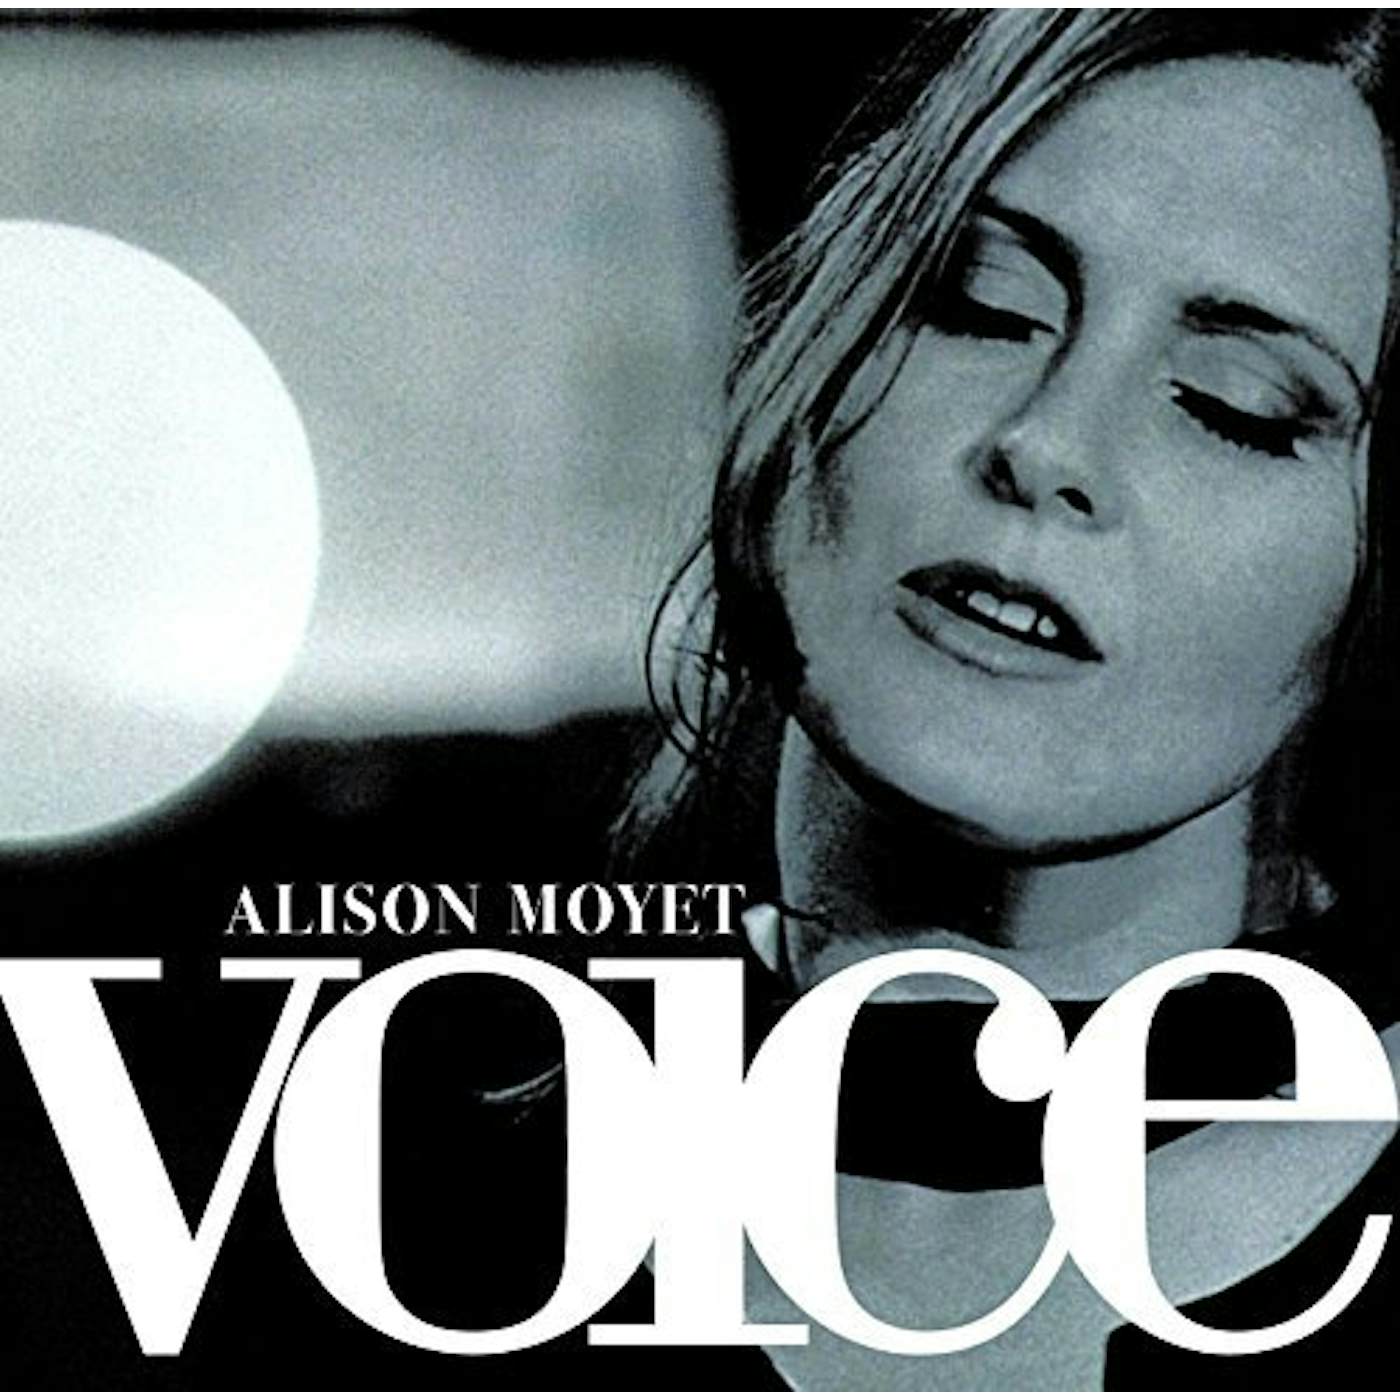 Alison Moyet Voice Vinyl Record